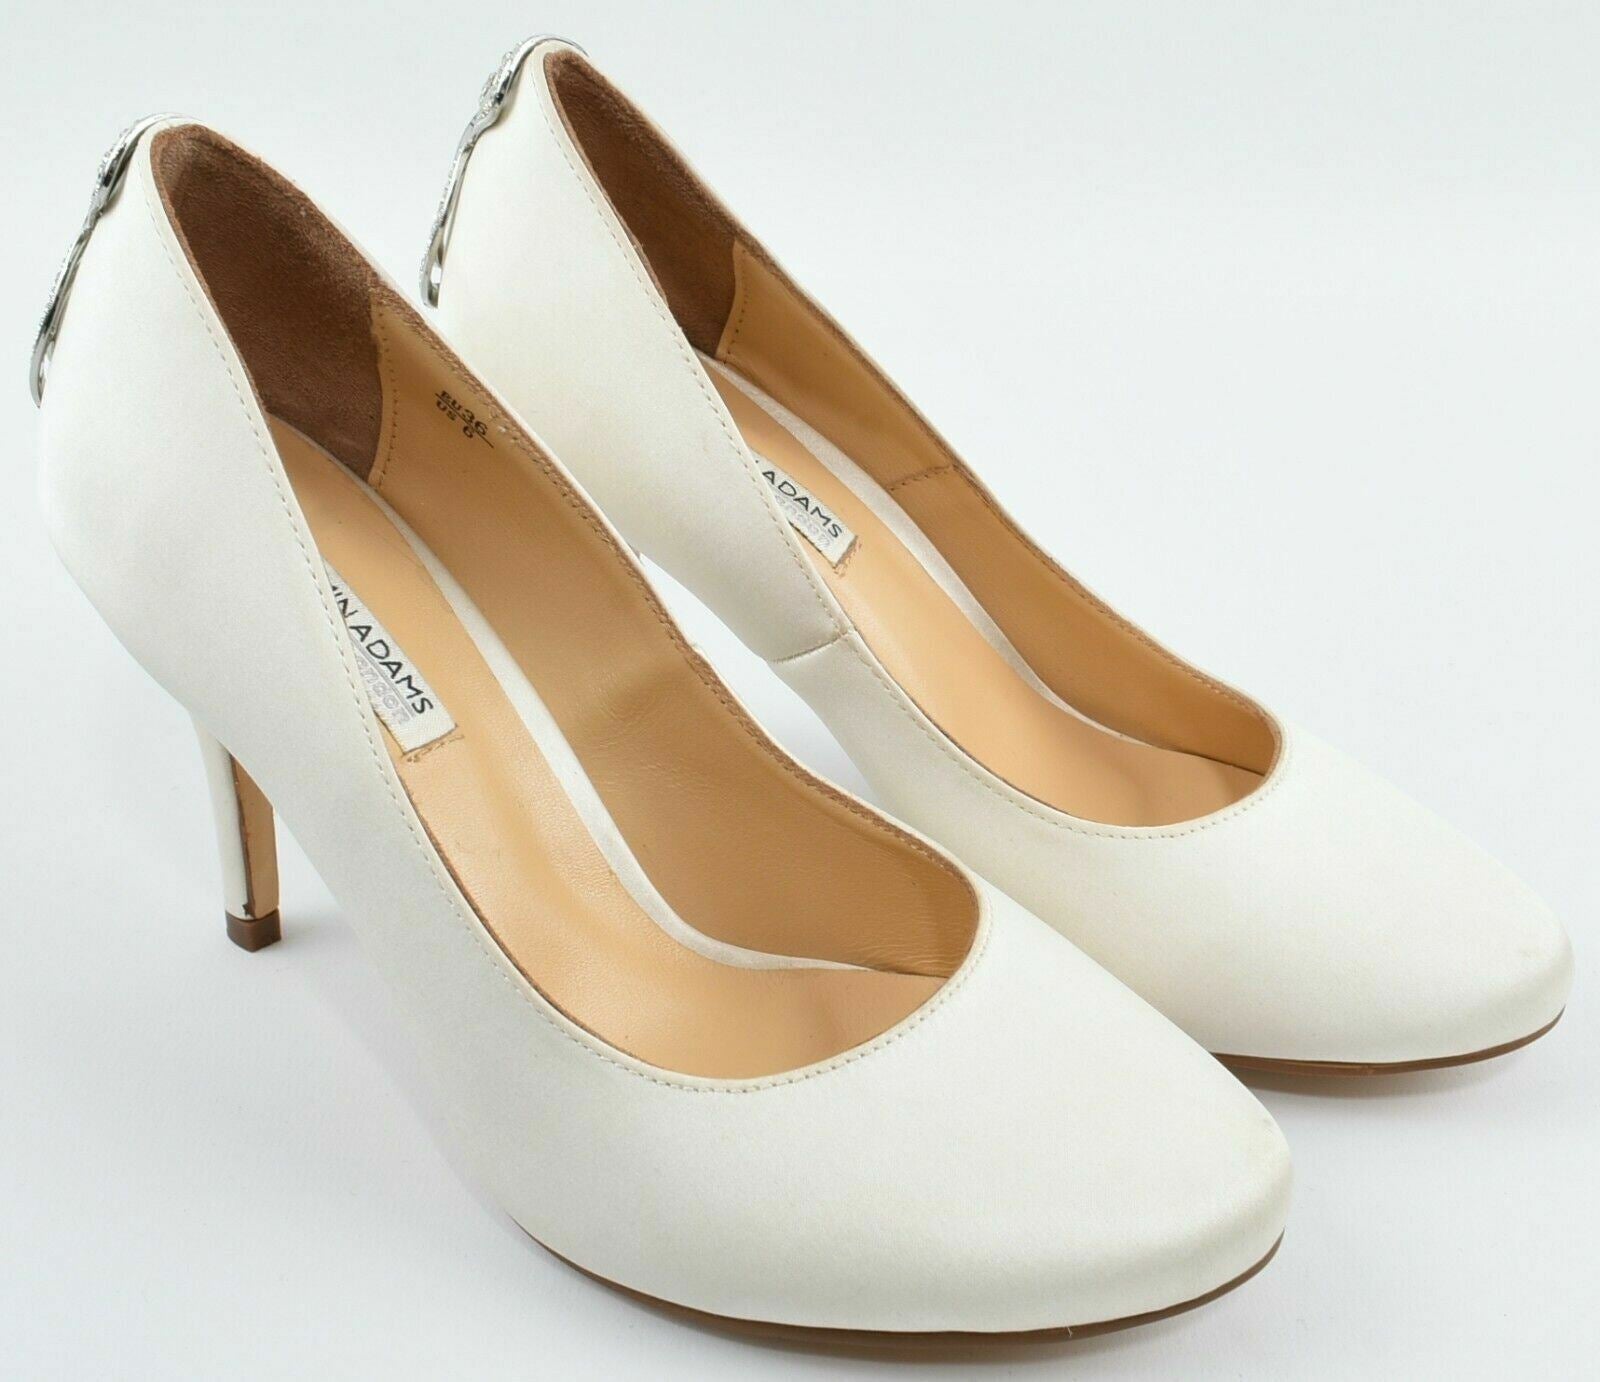 BENJAMIN ADAMS Women's Cream Sateen Embellished Heel Heels, UK 3 / EU 36